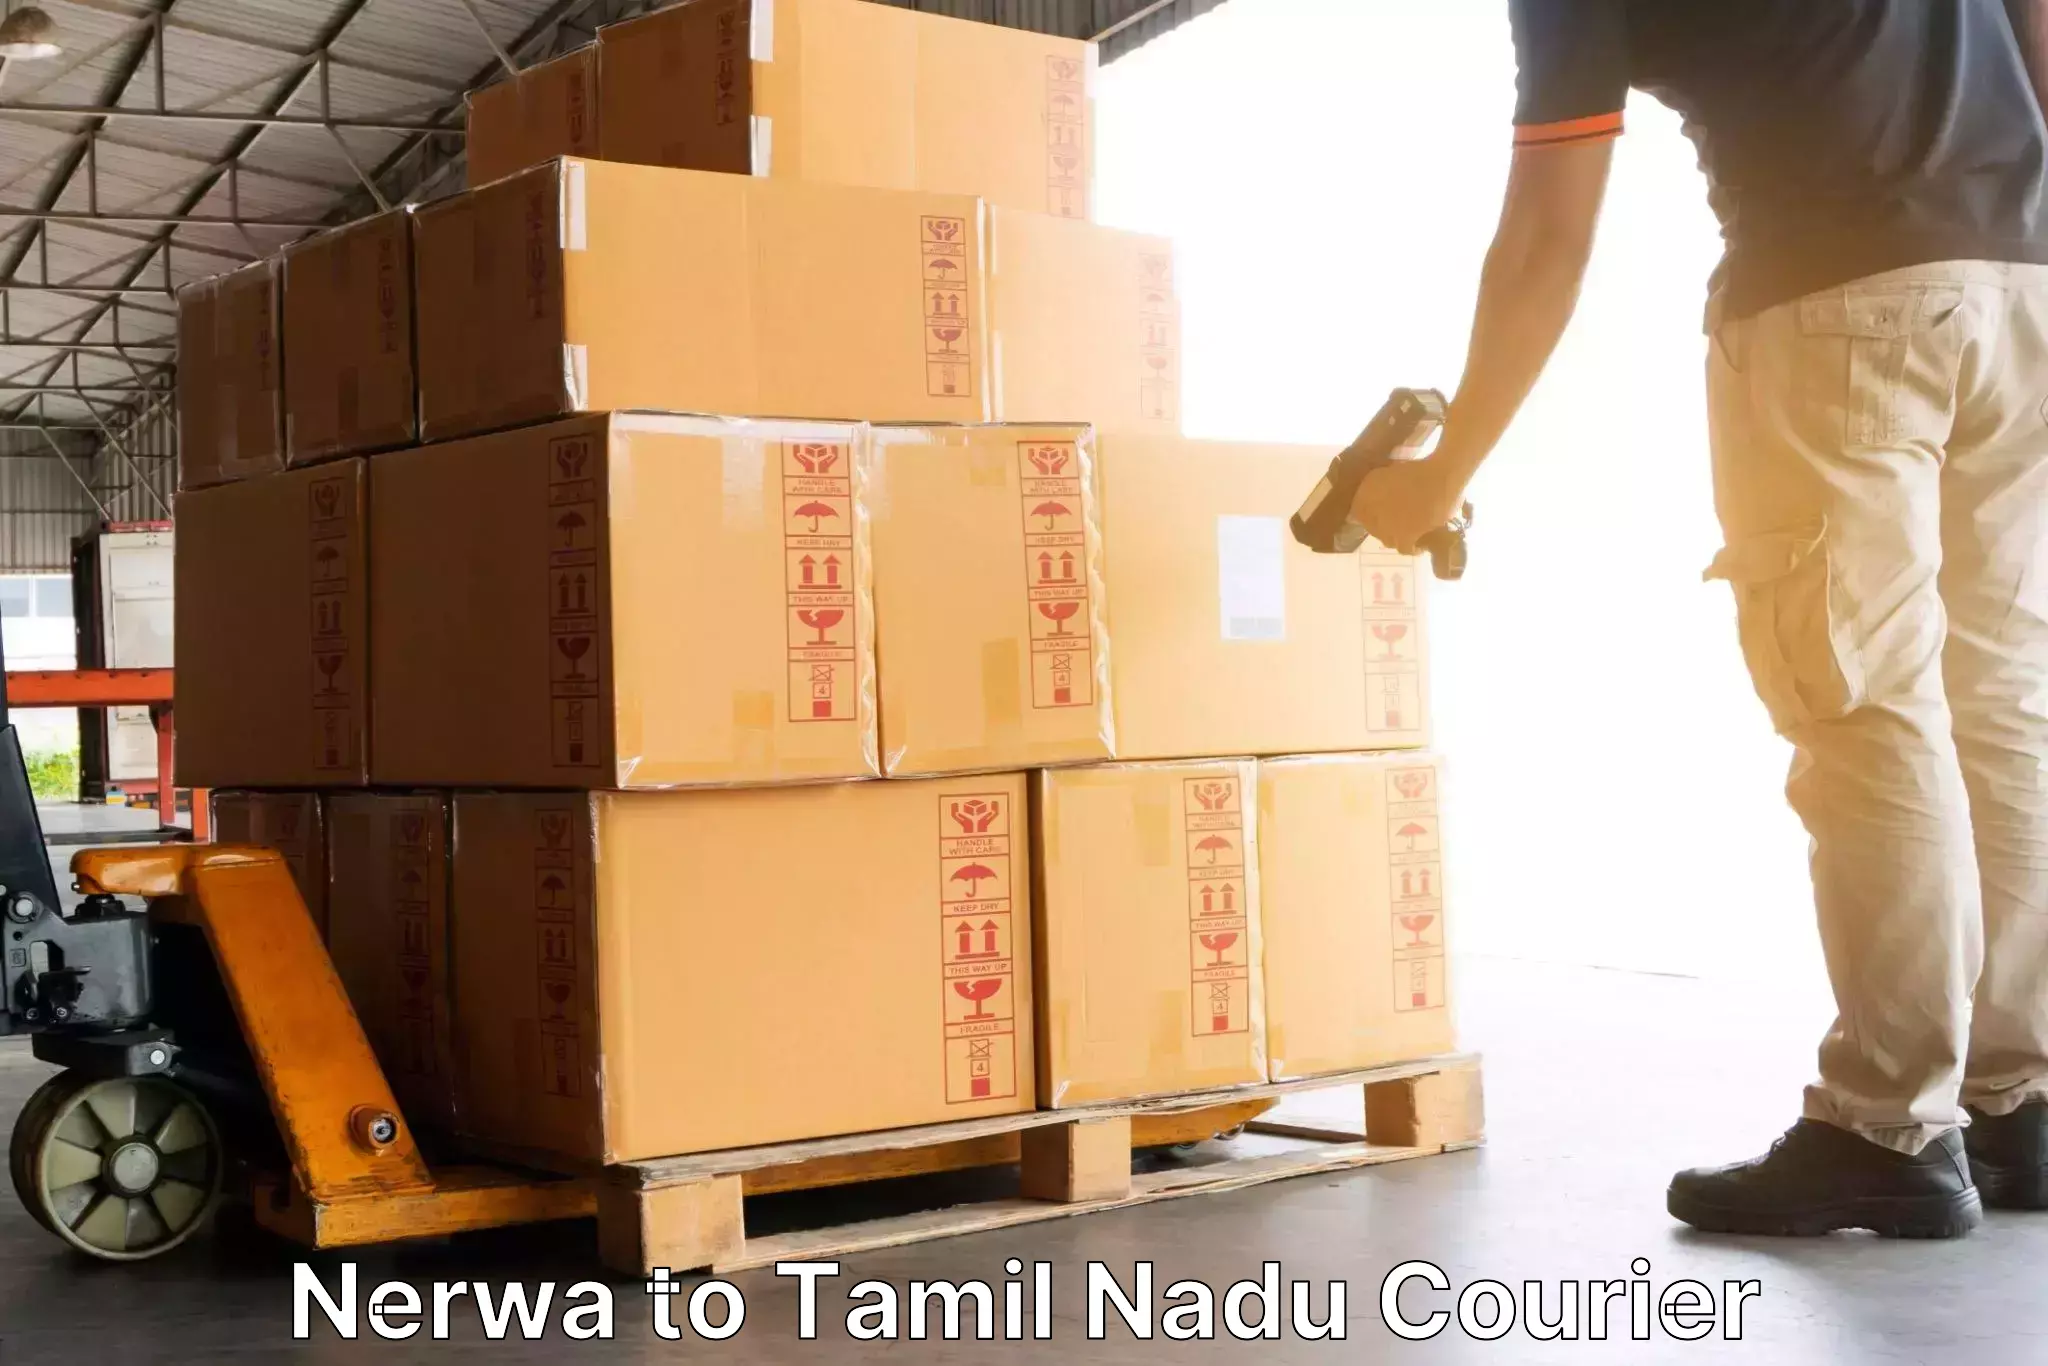 High-performance logistics Nerwa to Ambattur